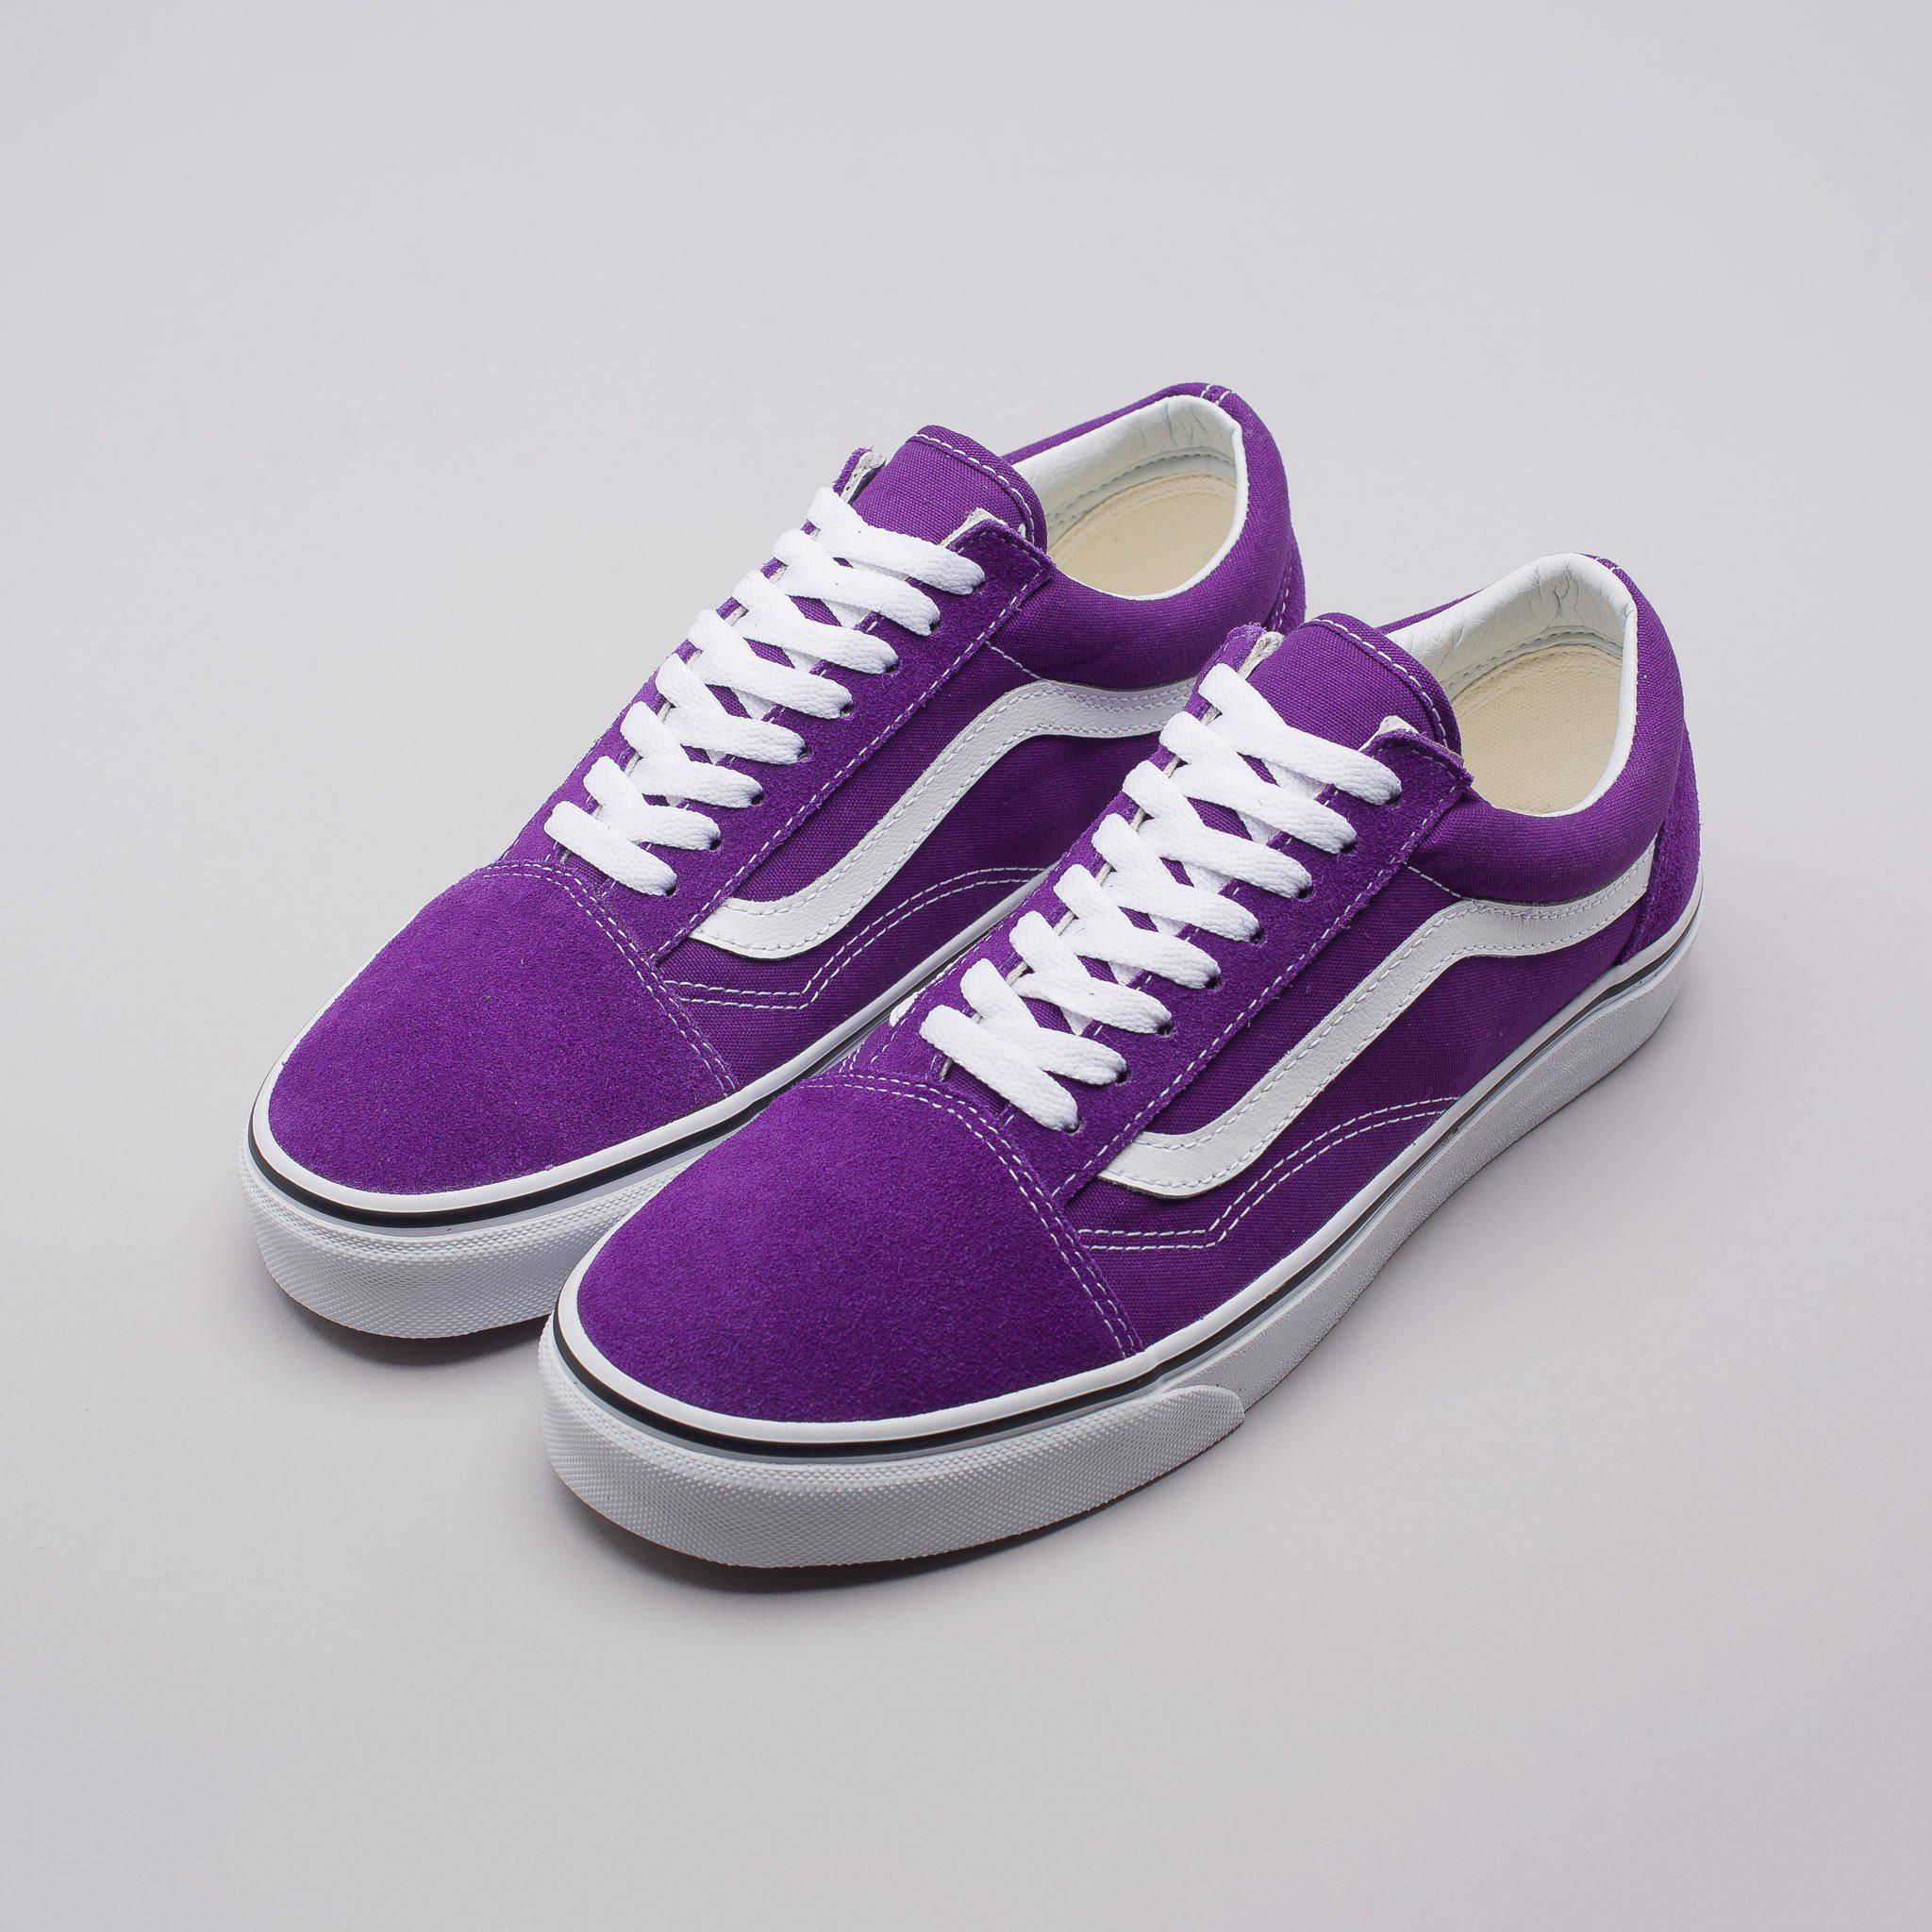 Purple Vans Old Skool Clearance, Save 64% | jlcatj.gob.mx